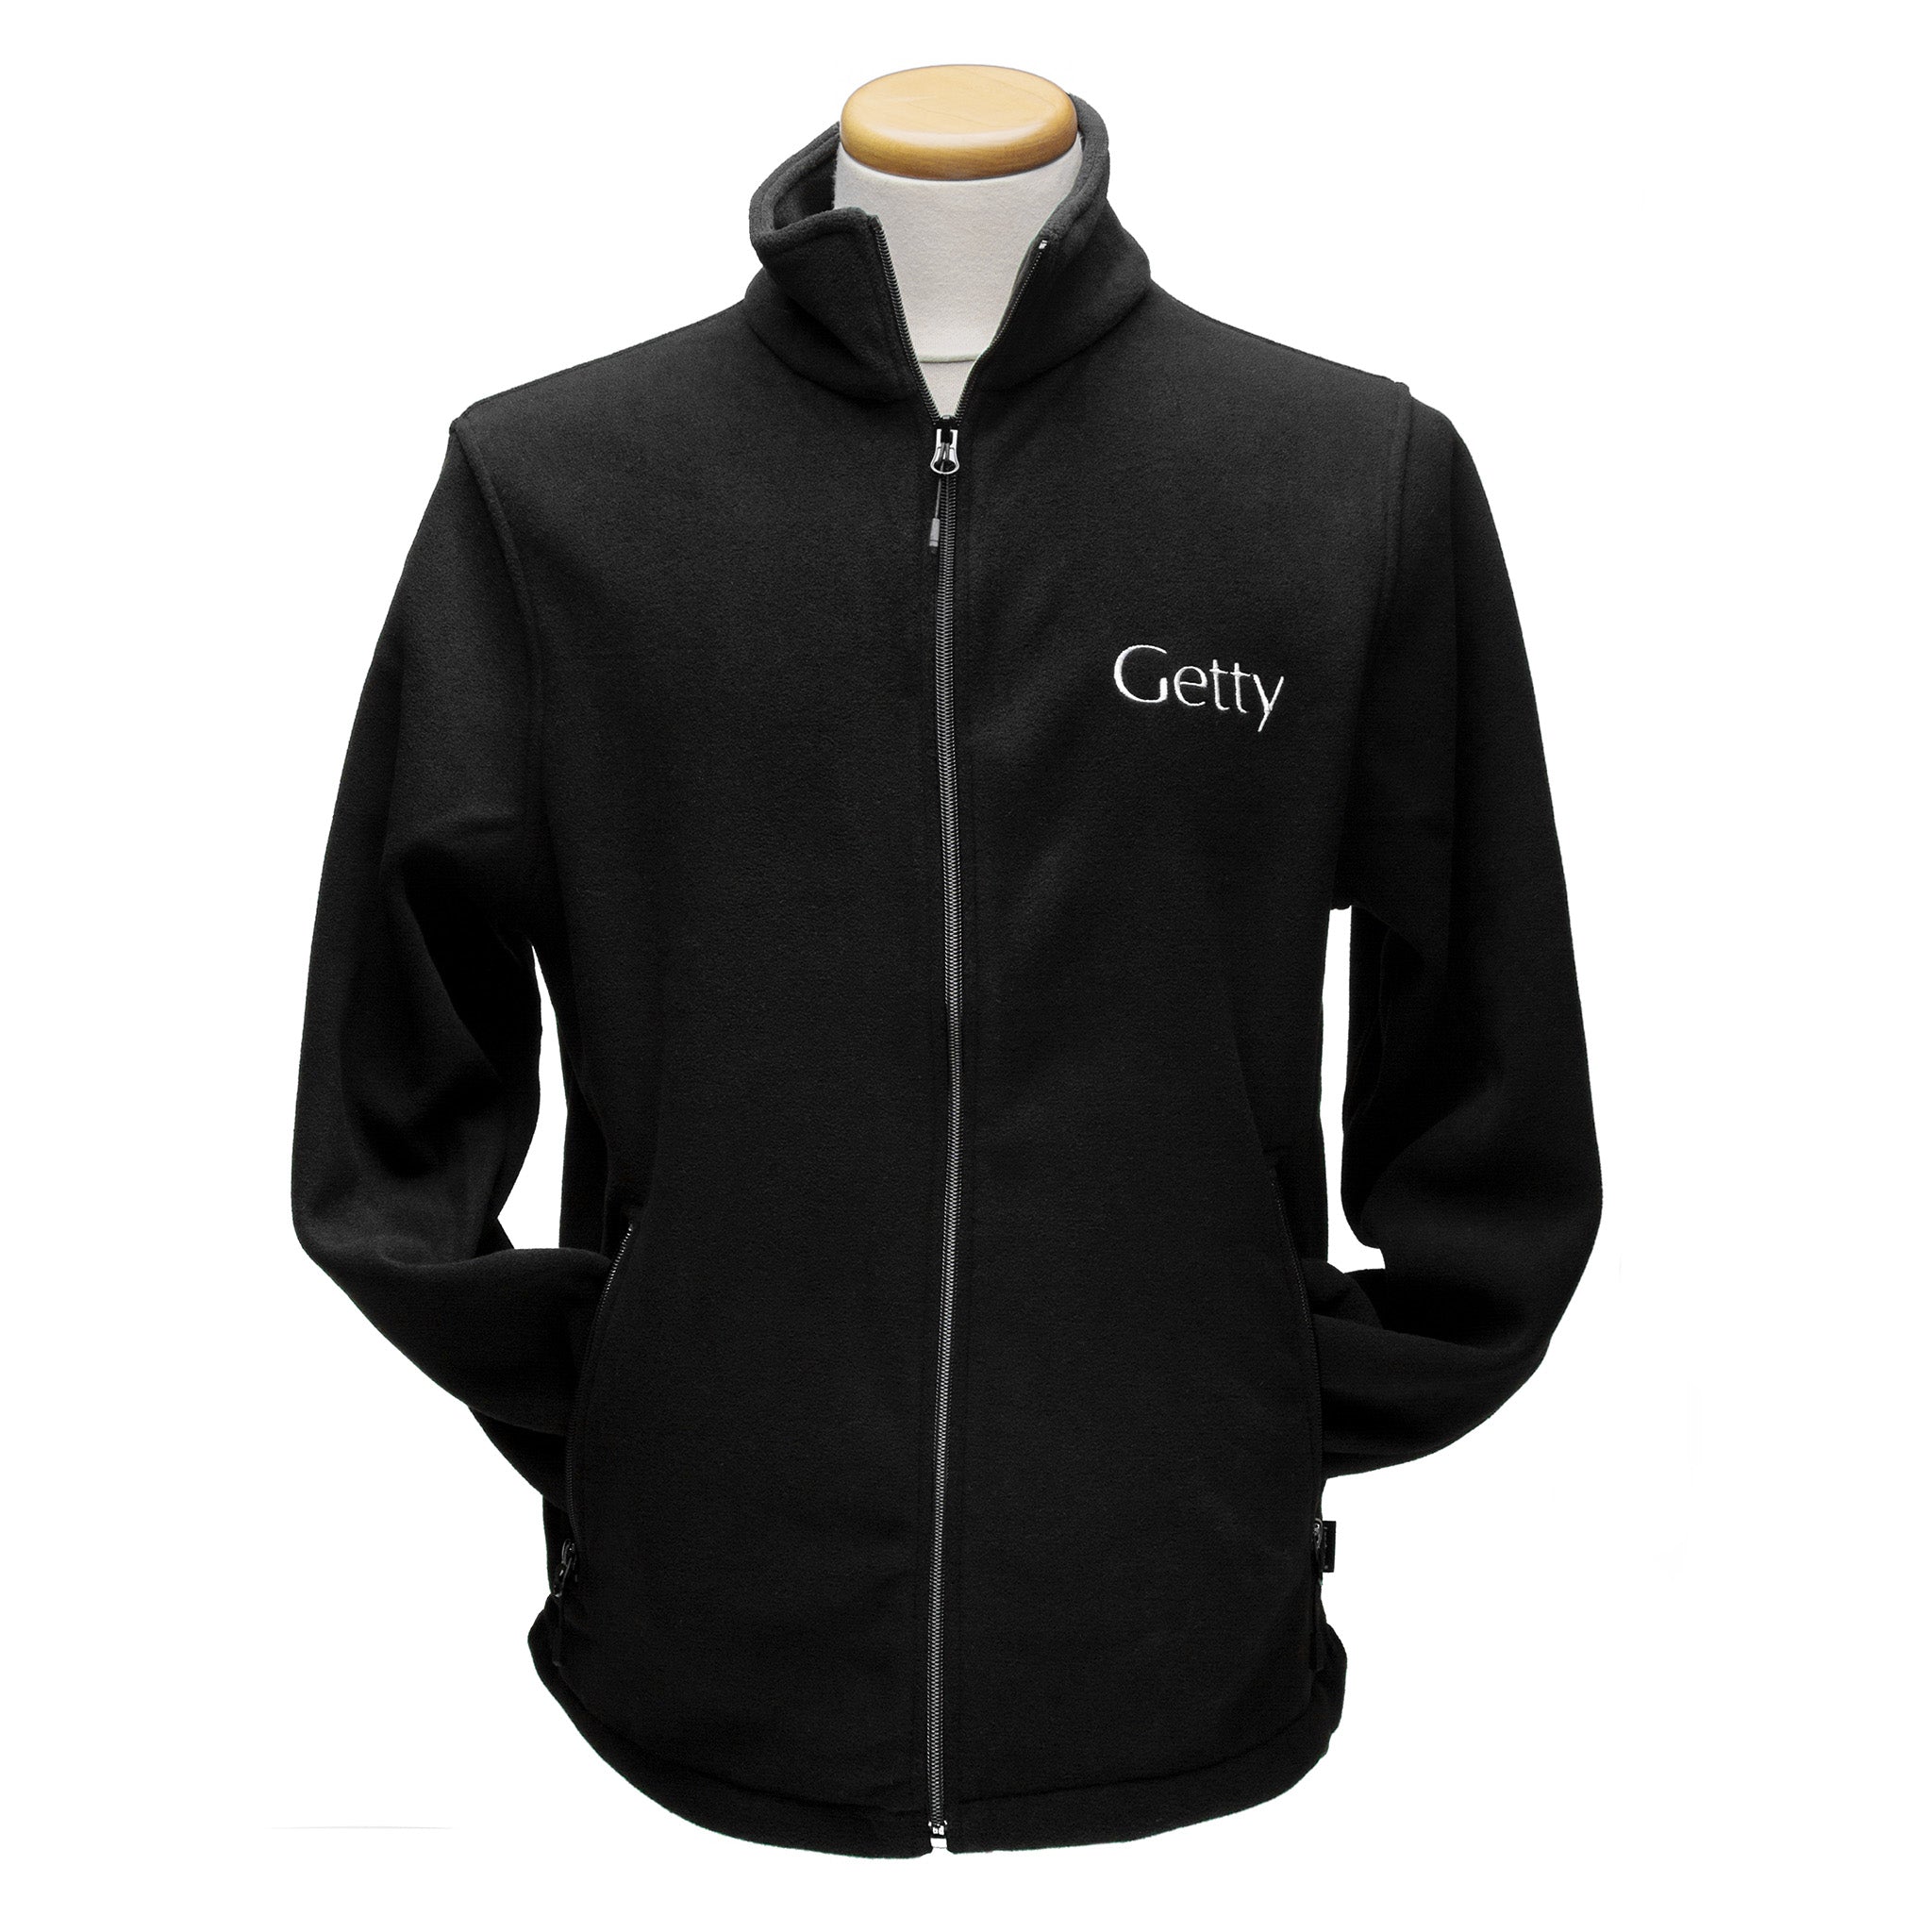 Getty Trust publications Getty Logo Fleece Jacket XL